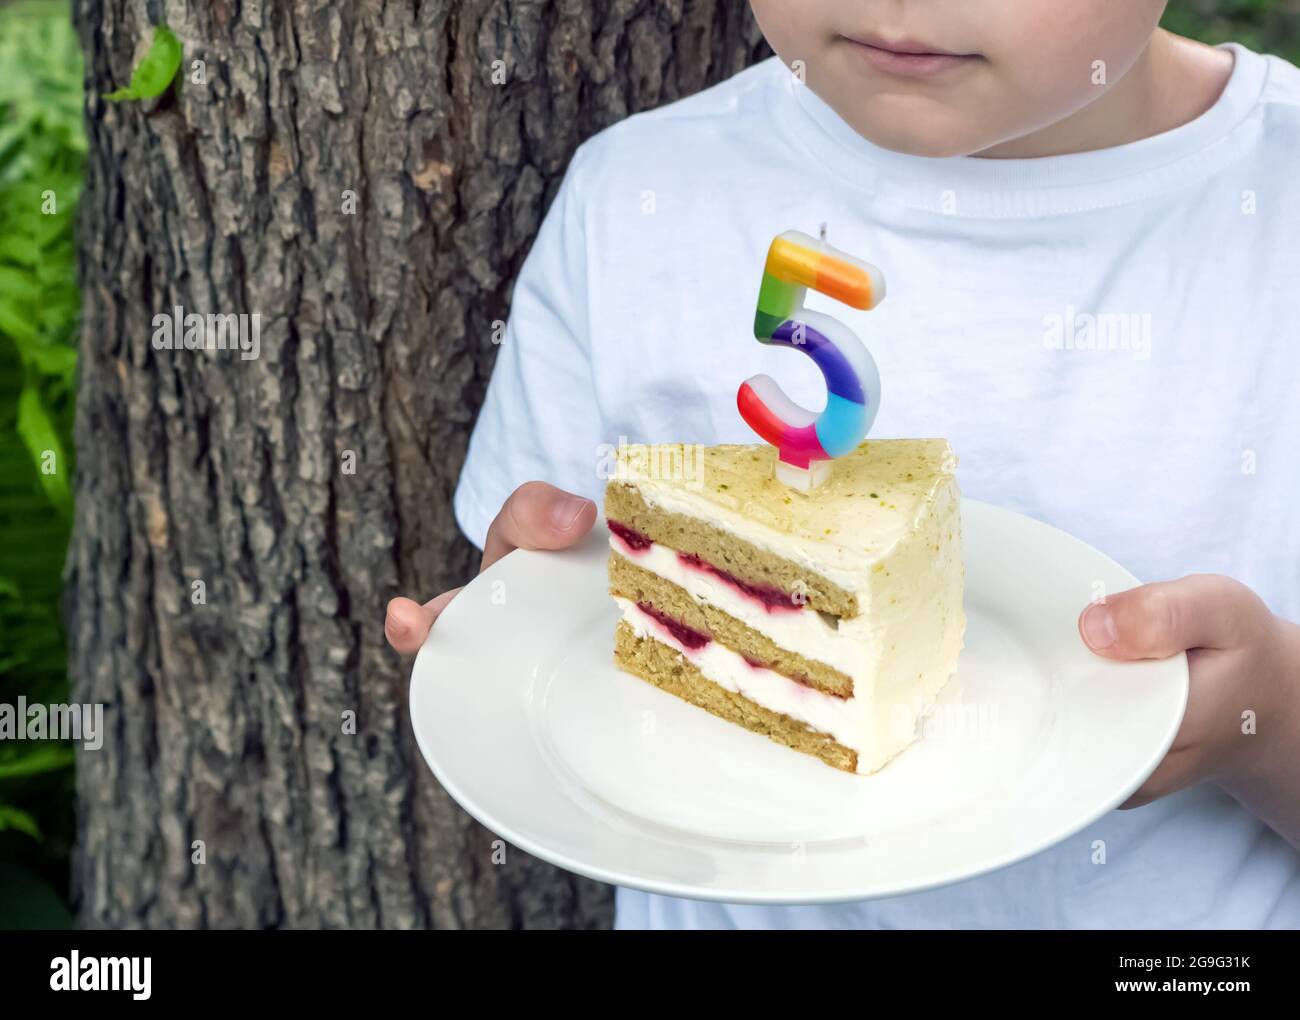 Un niño en una camiseta blanca sostiene un pedazo de pastel con una vela en un plato contra el fondo del jardín. Celebración del quinto cumpleaños. Foto de stock